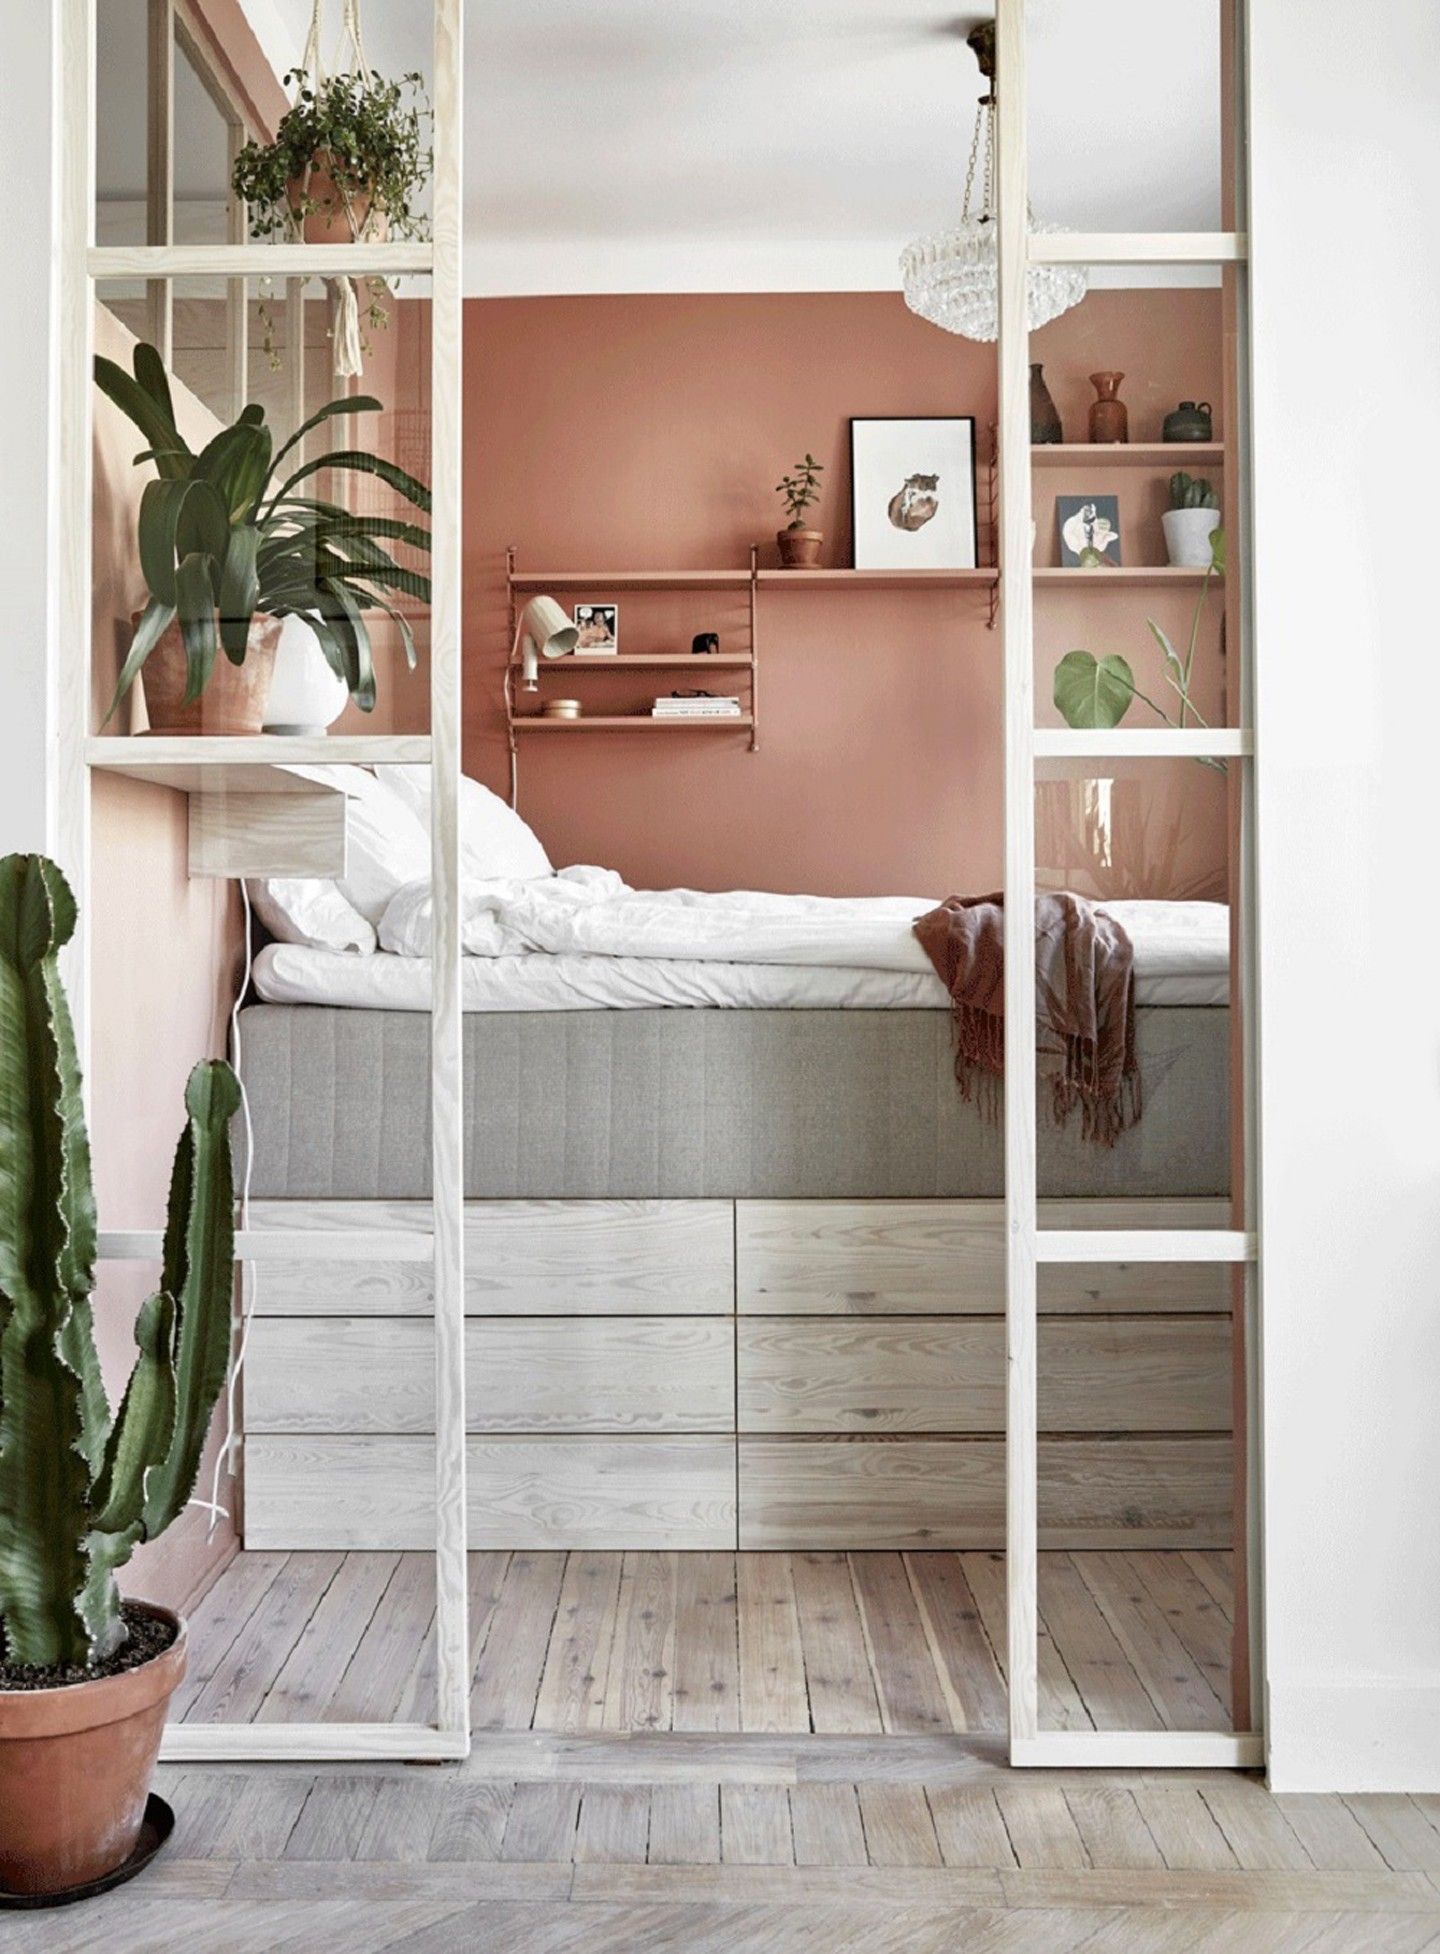 Những ý tưởng thiết kế biến căn phòng ngủ trở nên hoàn hảo bất chấp diện tích nhỏ hẹp - Ảnh 1.